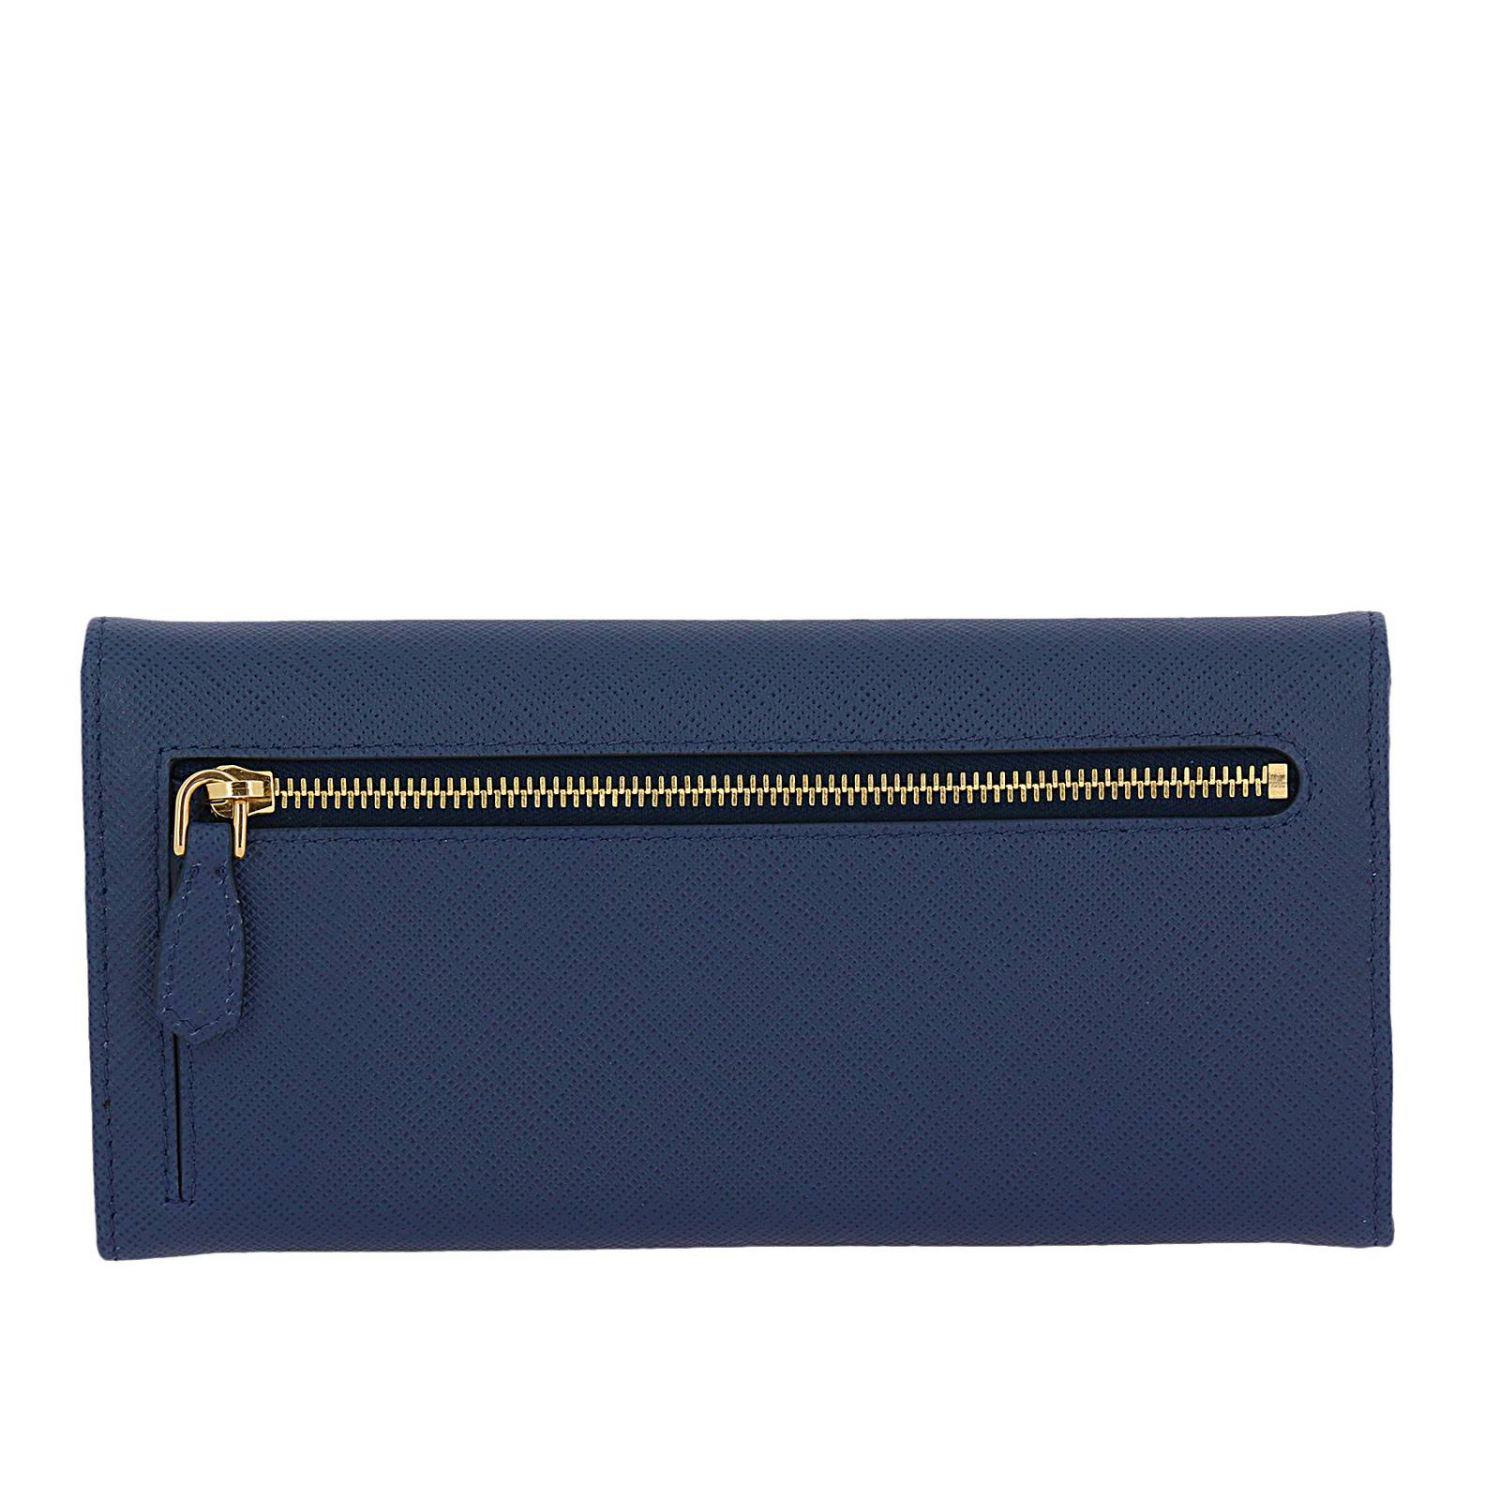 Prada Leather Wallet Women in Blue - Lyst